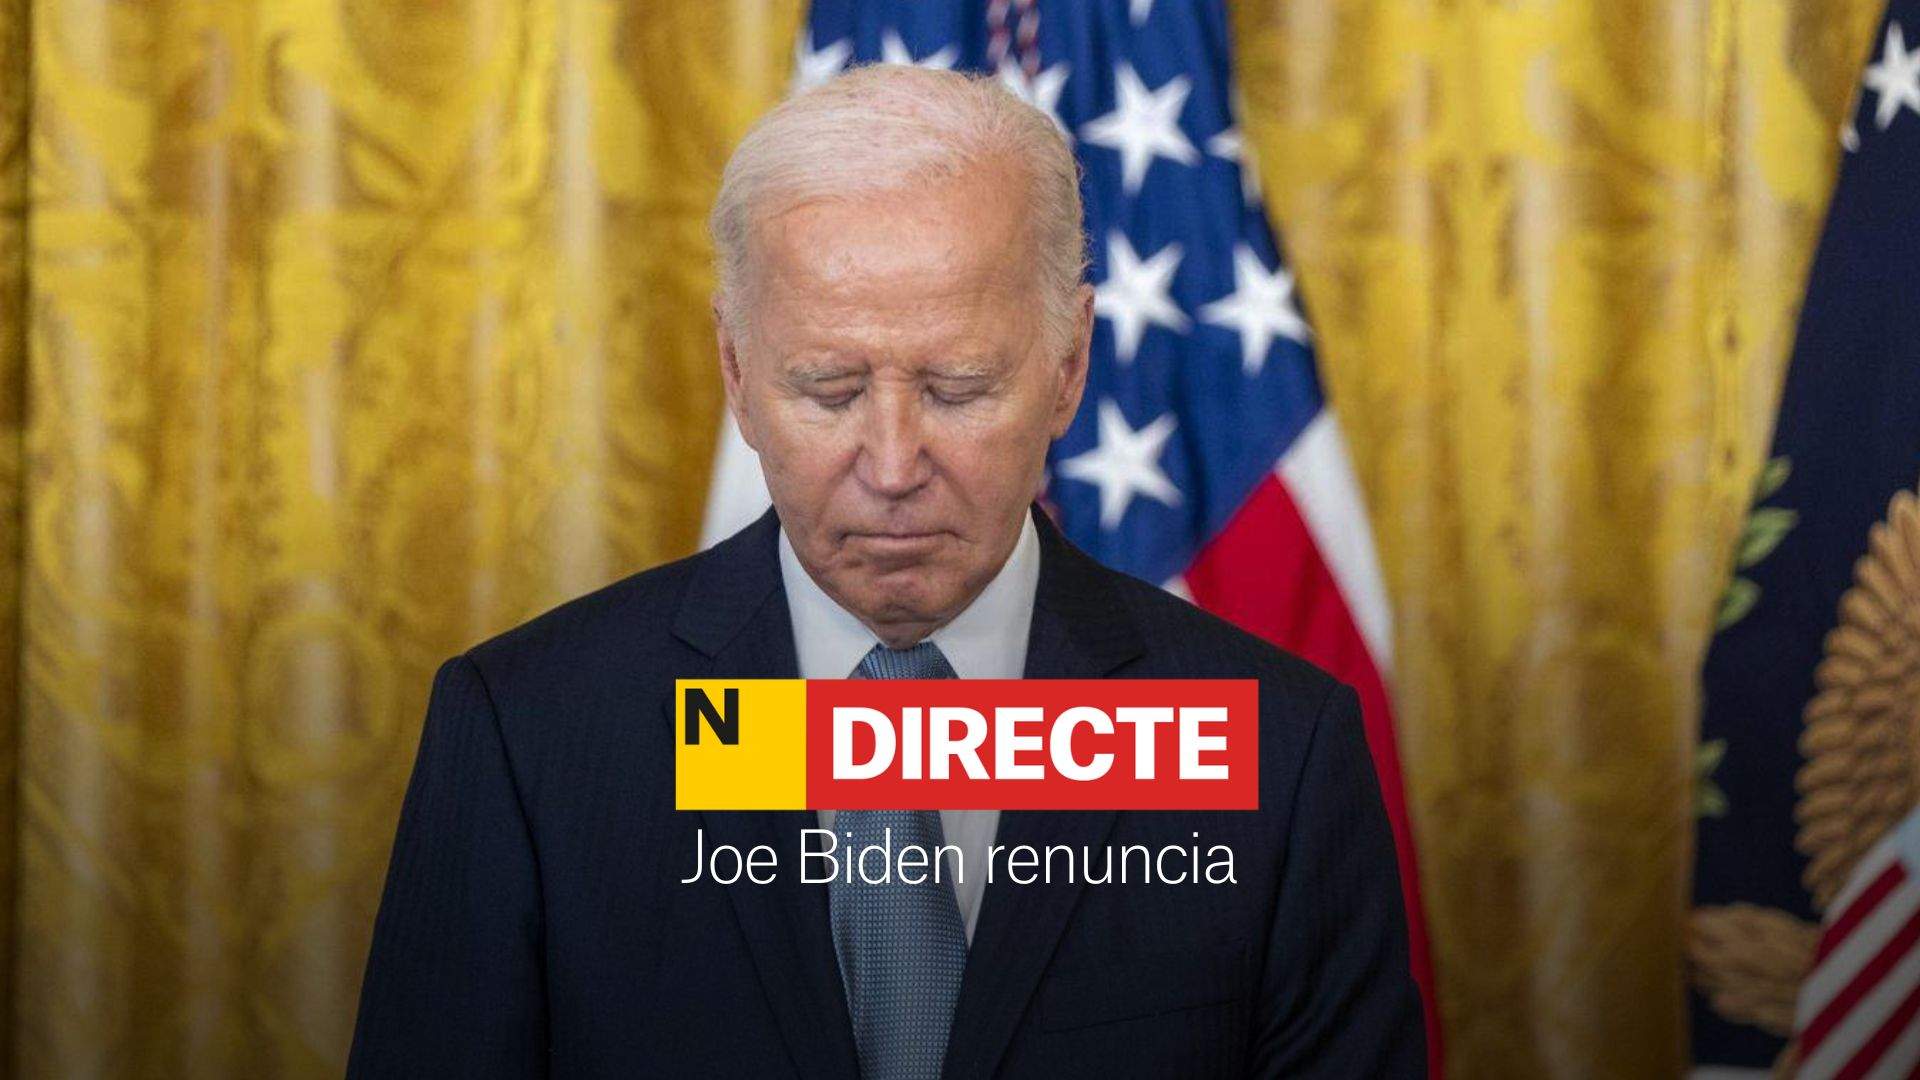 Joe Biden renuncia, DIRECTE | Última hora i reaccions